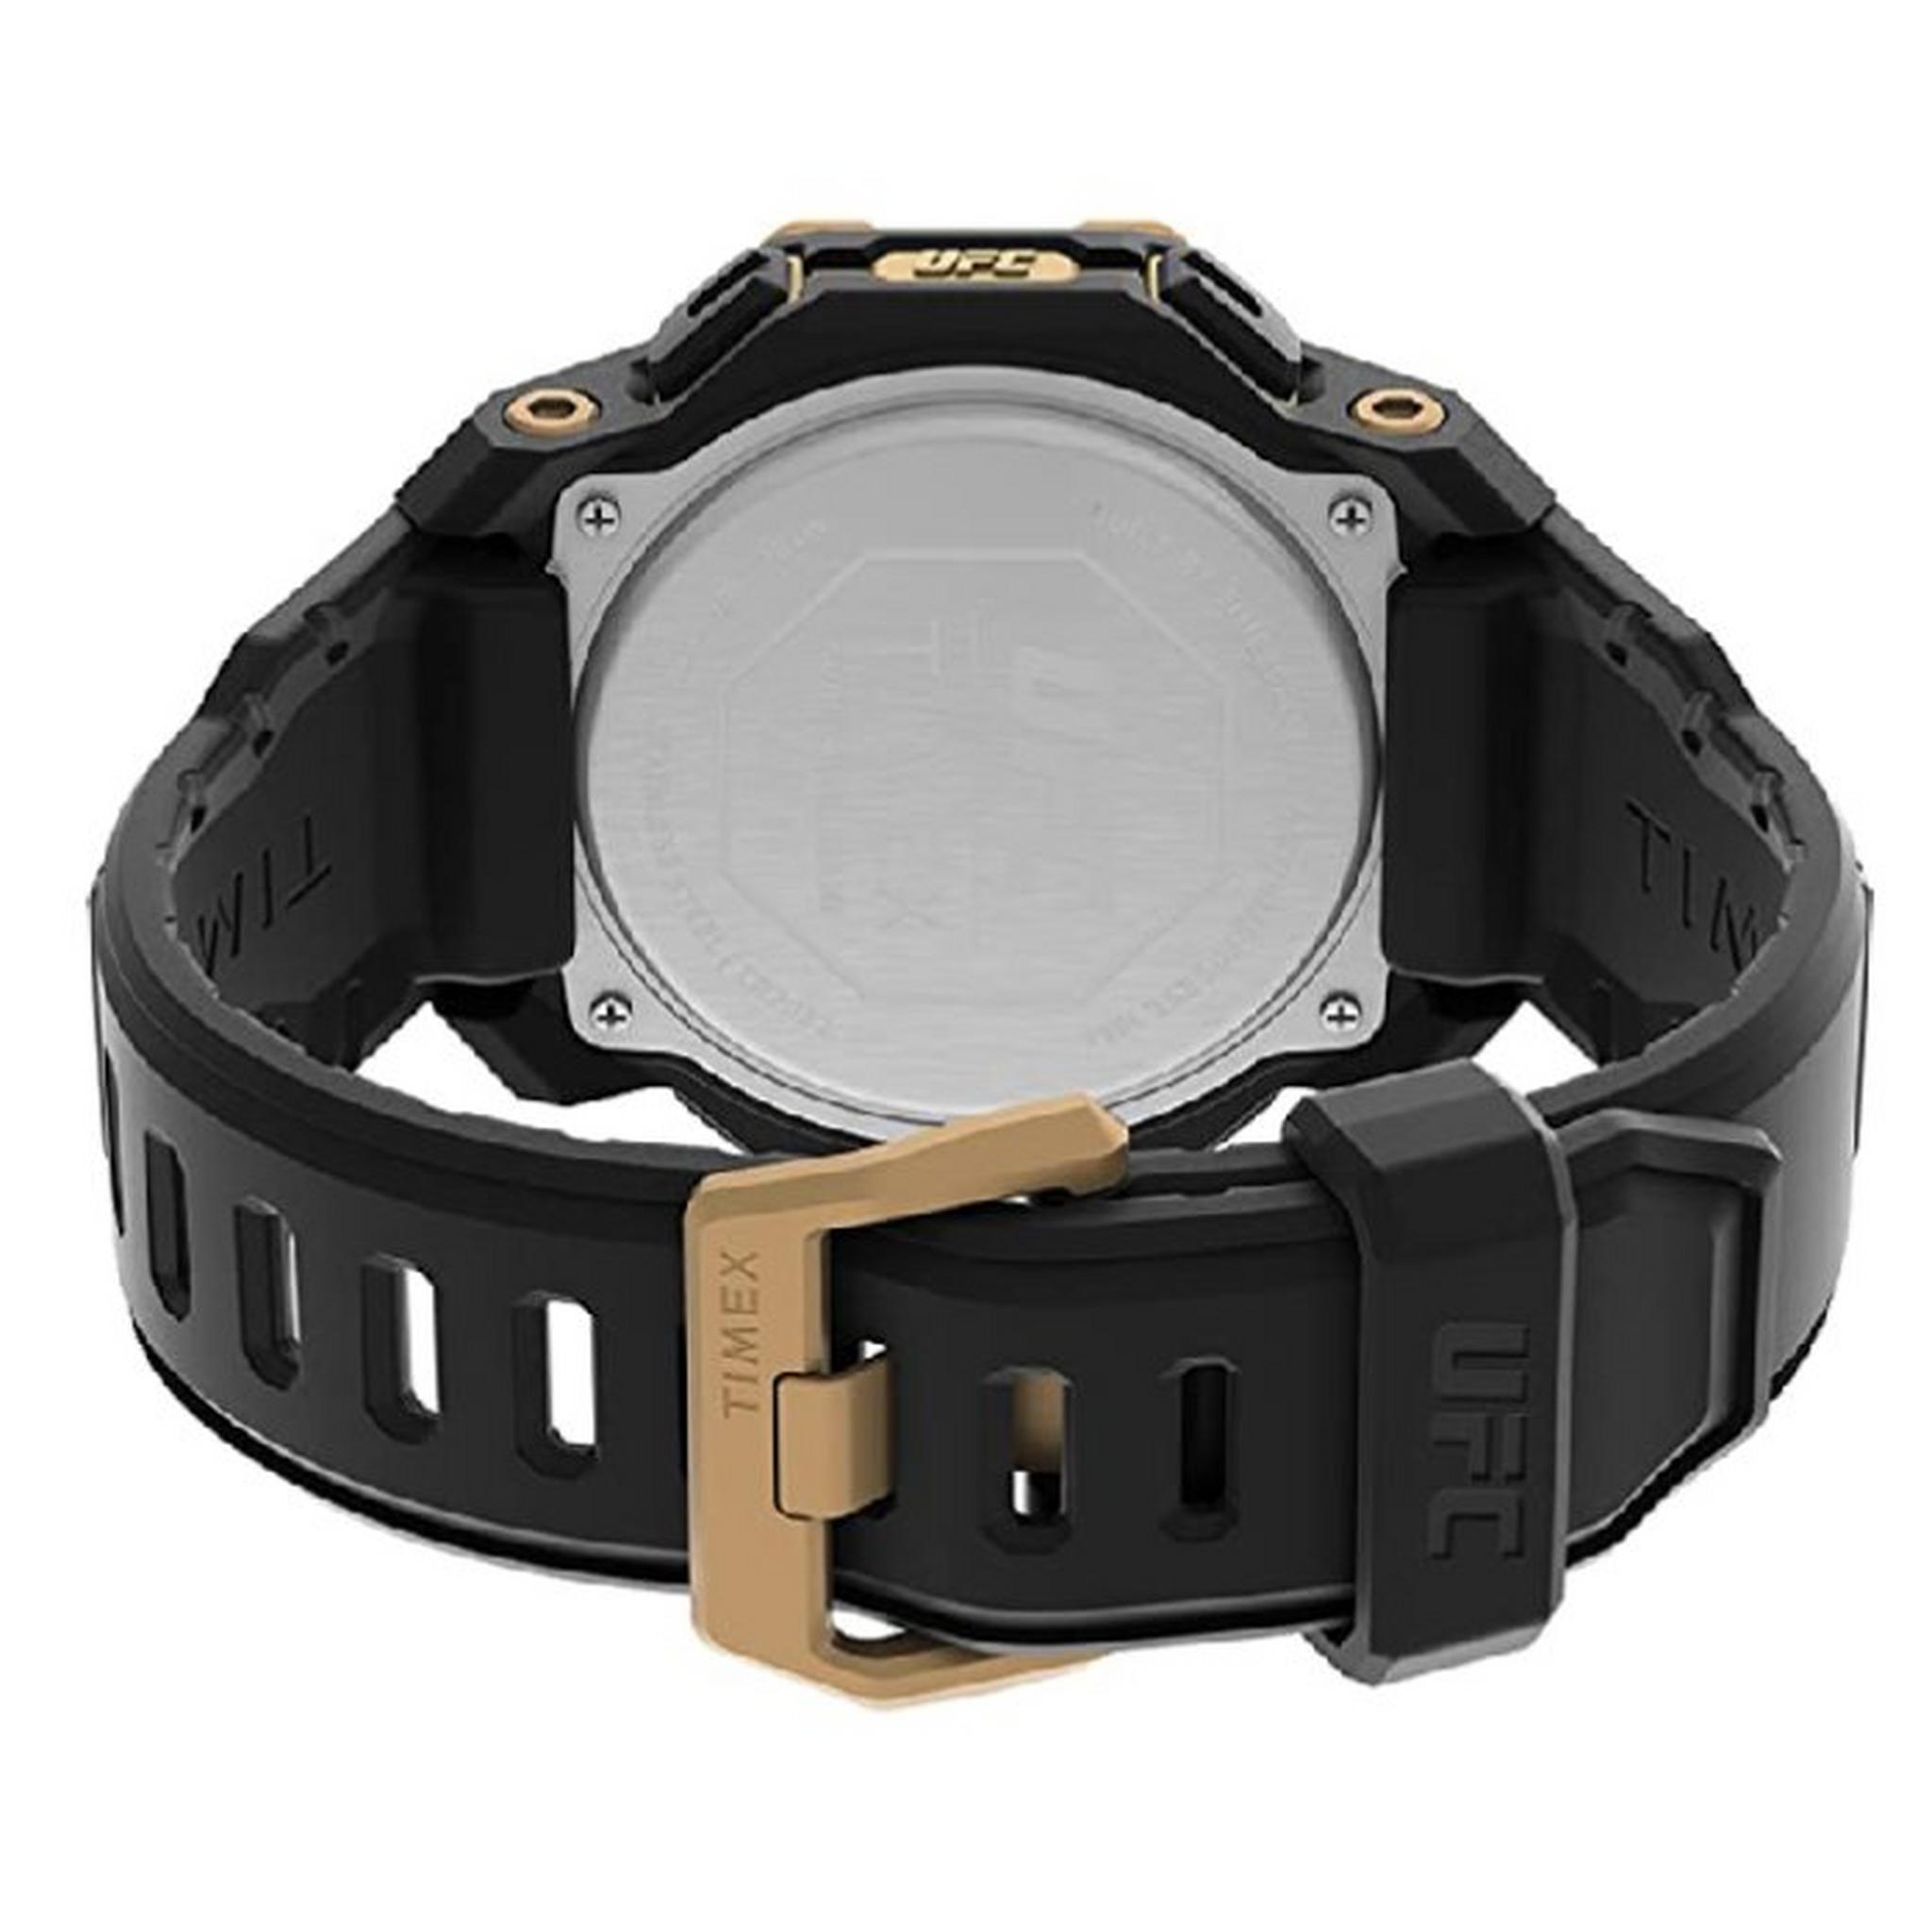 Timex Watch for Men, Digital, Resin Band, 48mm, TW2V89000 - Black